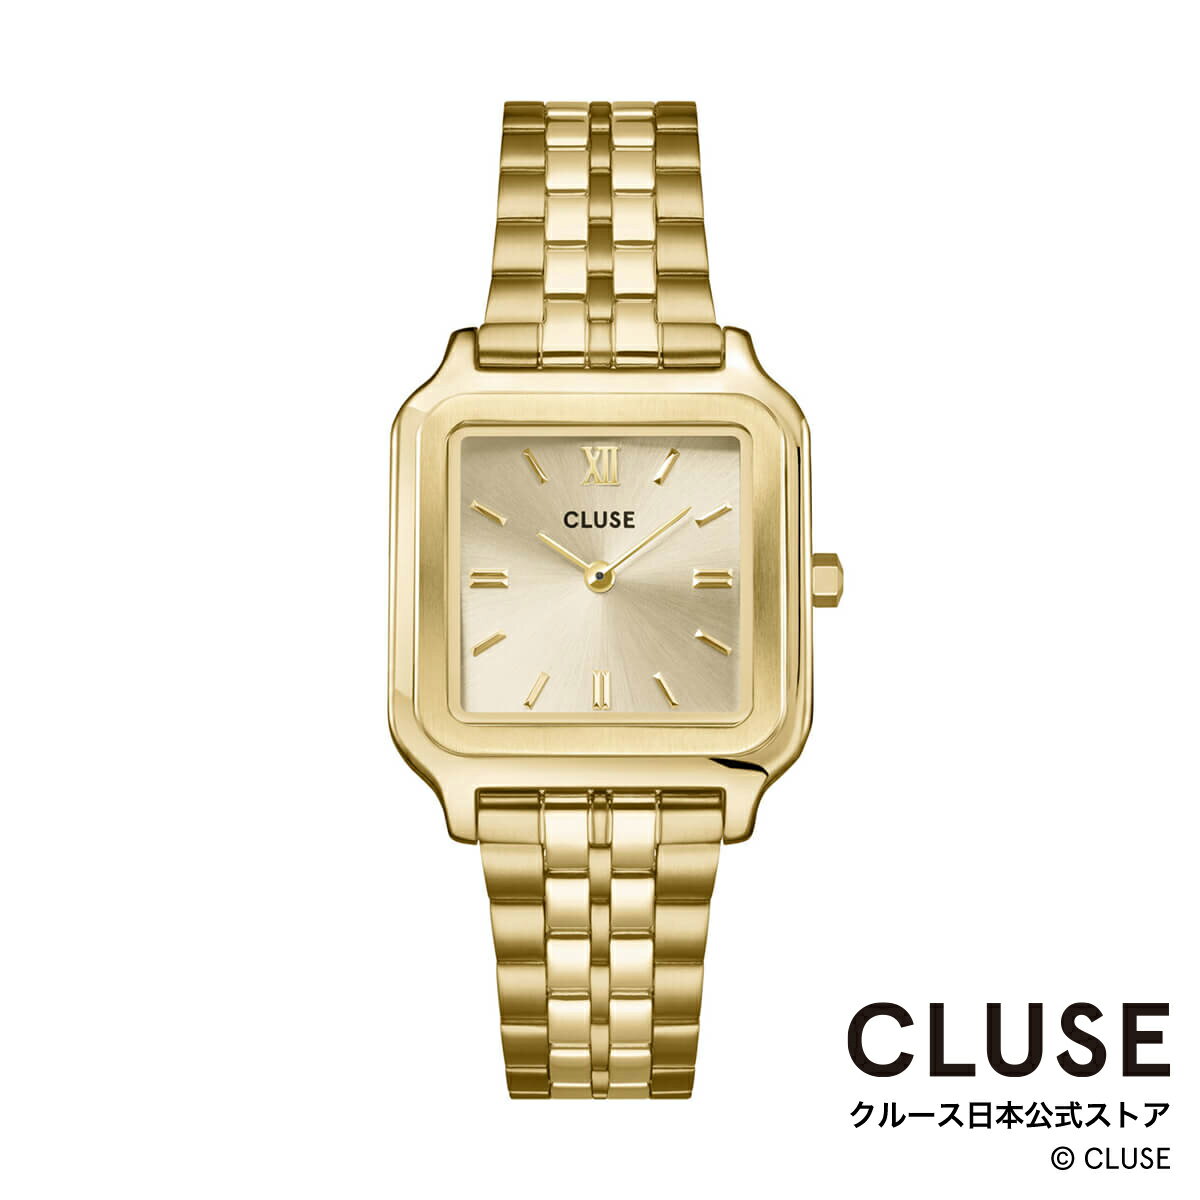 クルース CLUSE 日本公式ストア グラシューズ シャンパンゴールド ステンレスベルト レディース 女性 腕時計 時計 防水 クォーツ